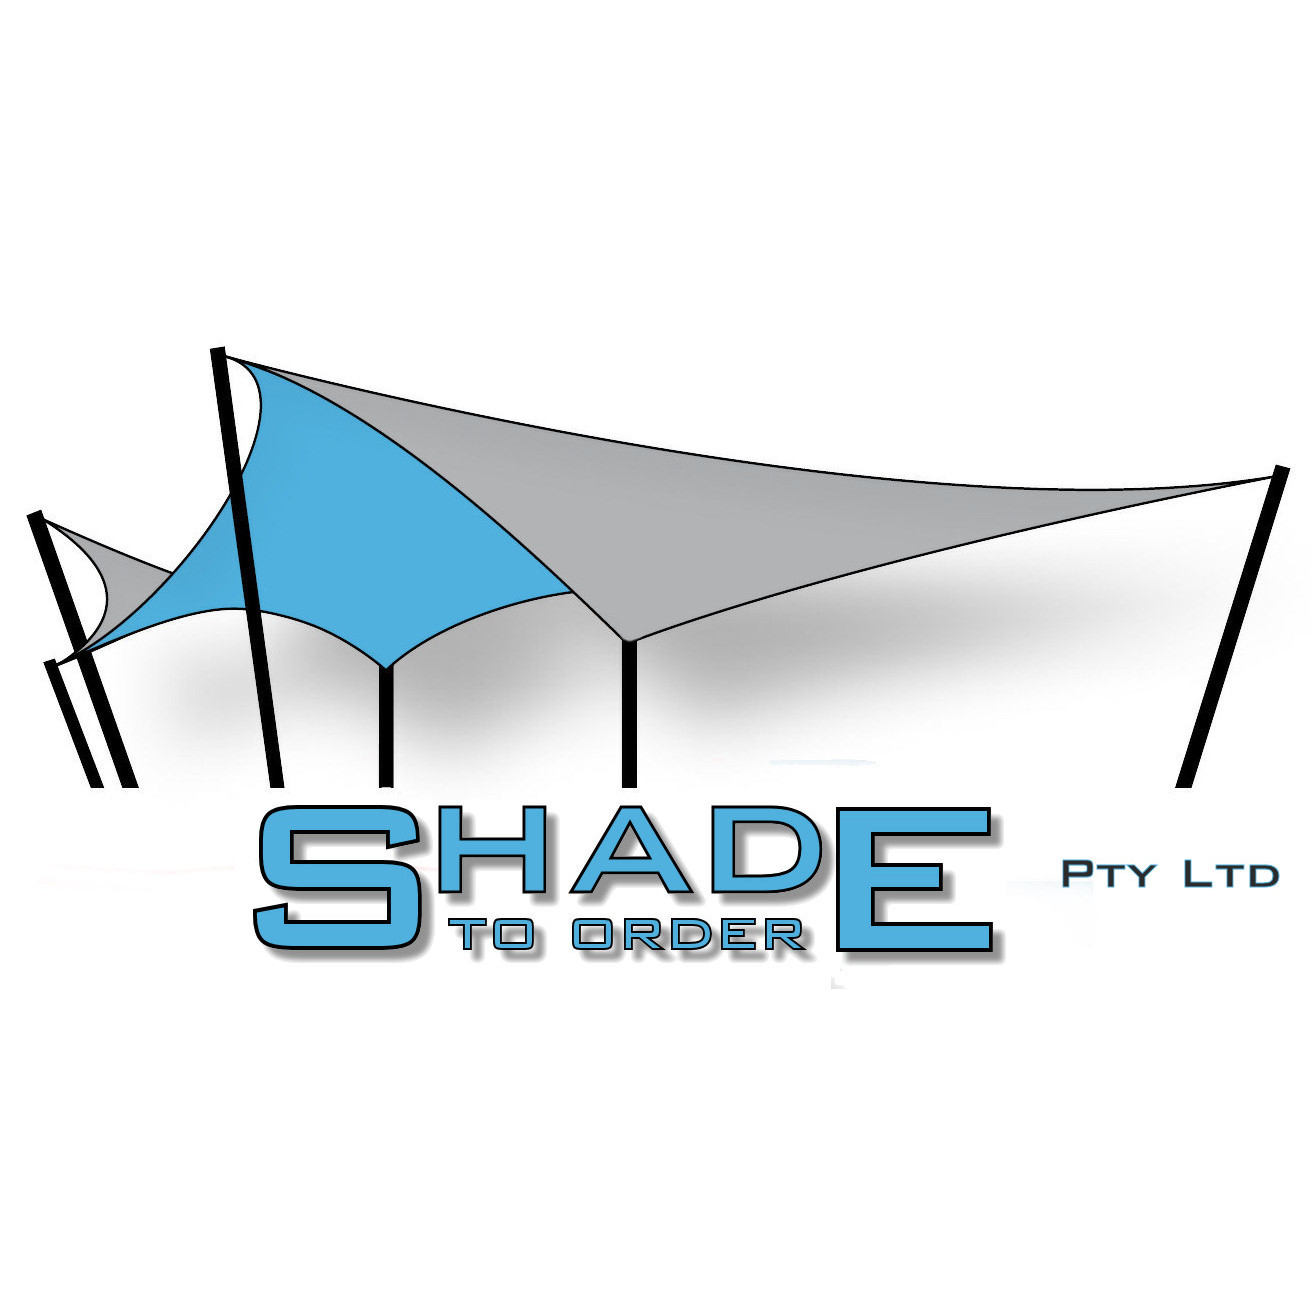 Shade To Order Pty Ltd Gateshead (02) 4942 5793